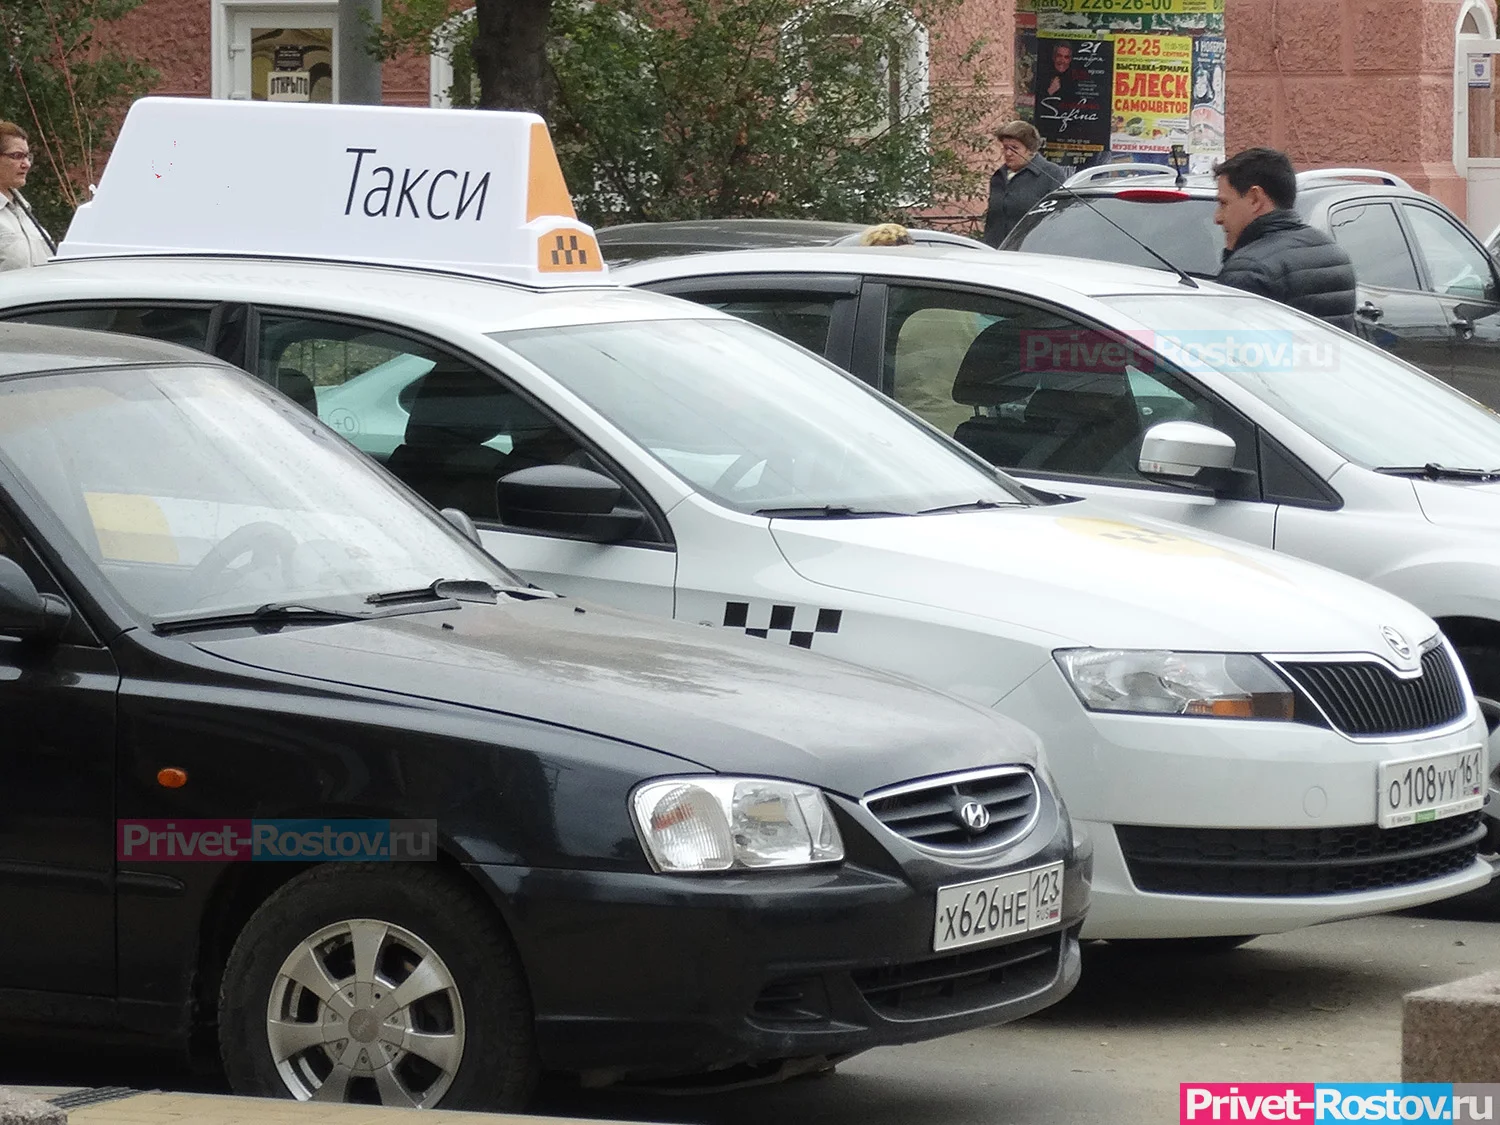 ФАС разберется: депутата Госдумы Стенякину возмутил рост цен на такси в Ростове